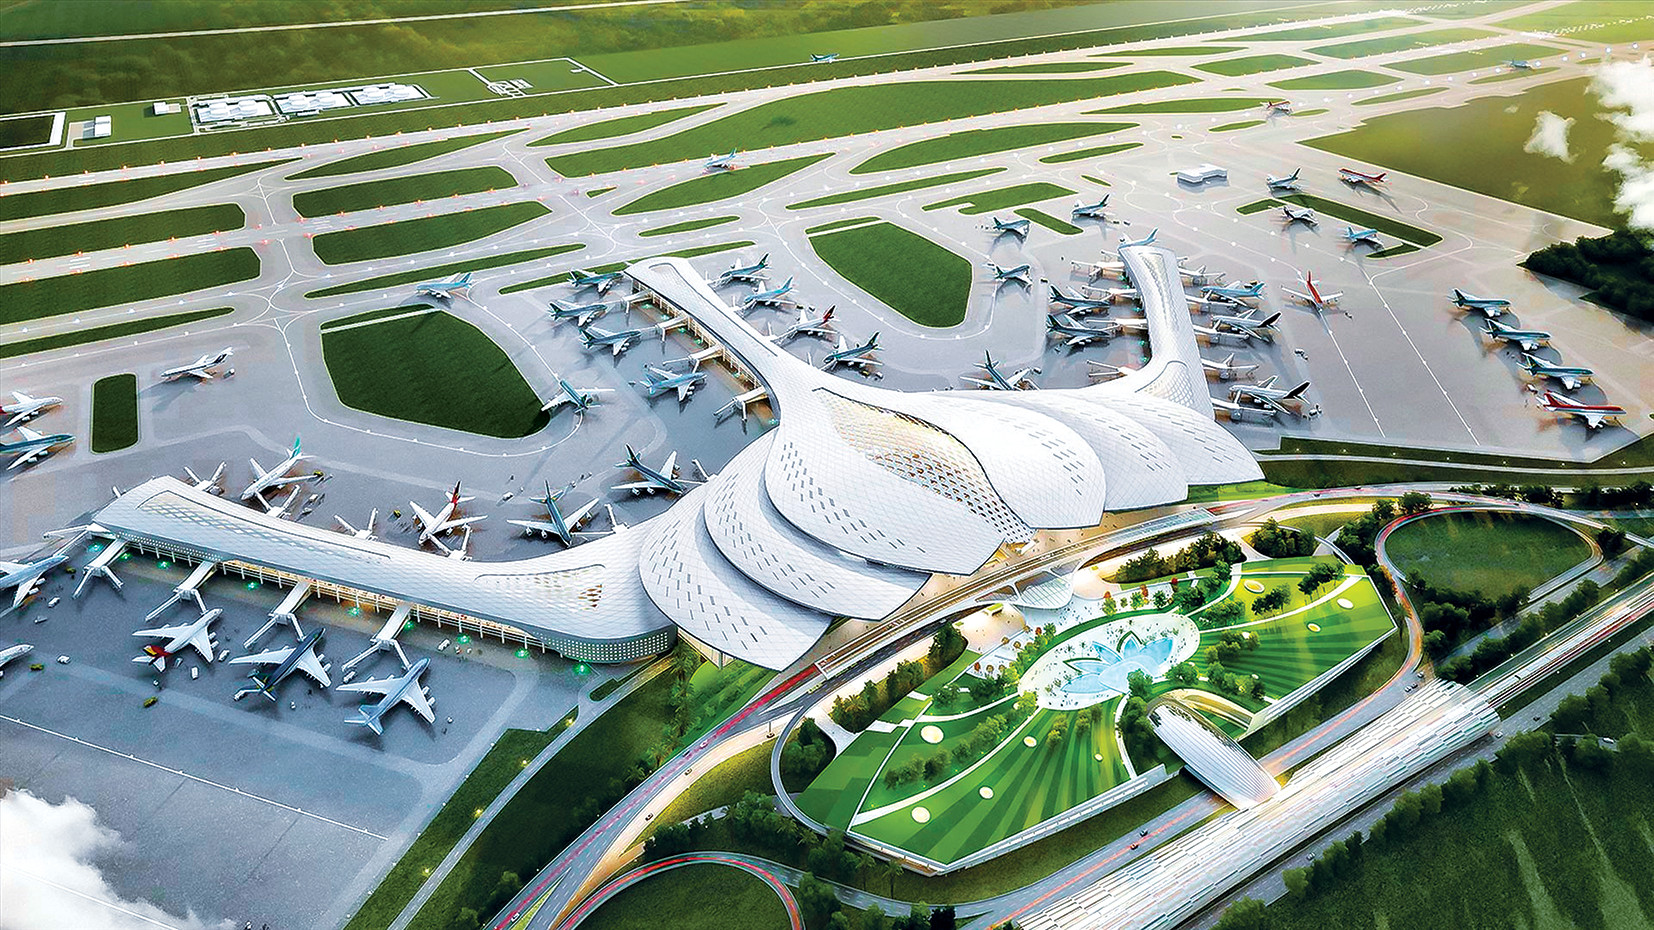 Sân bay Long Thành: Những hình ảnh về sân bay Long Thành sẽ đưa bạn đến khám phá tiềm năng phát triển kinh tế của Đông Nam Bộ. Sân bay với quy mô lớn và hiện đại sẽ giúp nước ta vươn tầm với trong thế giới.